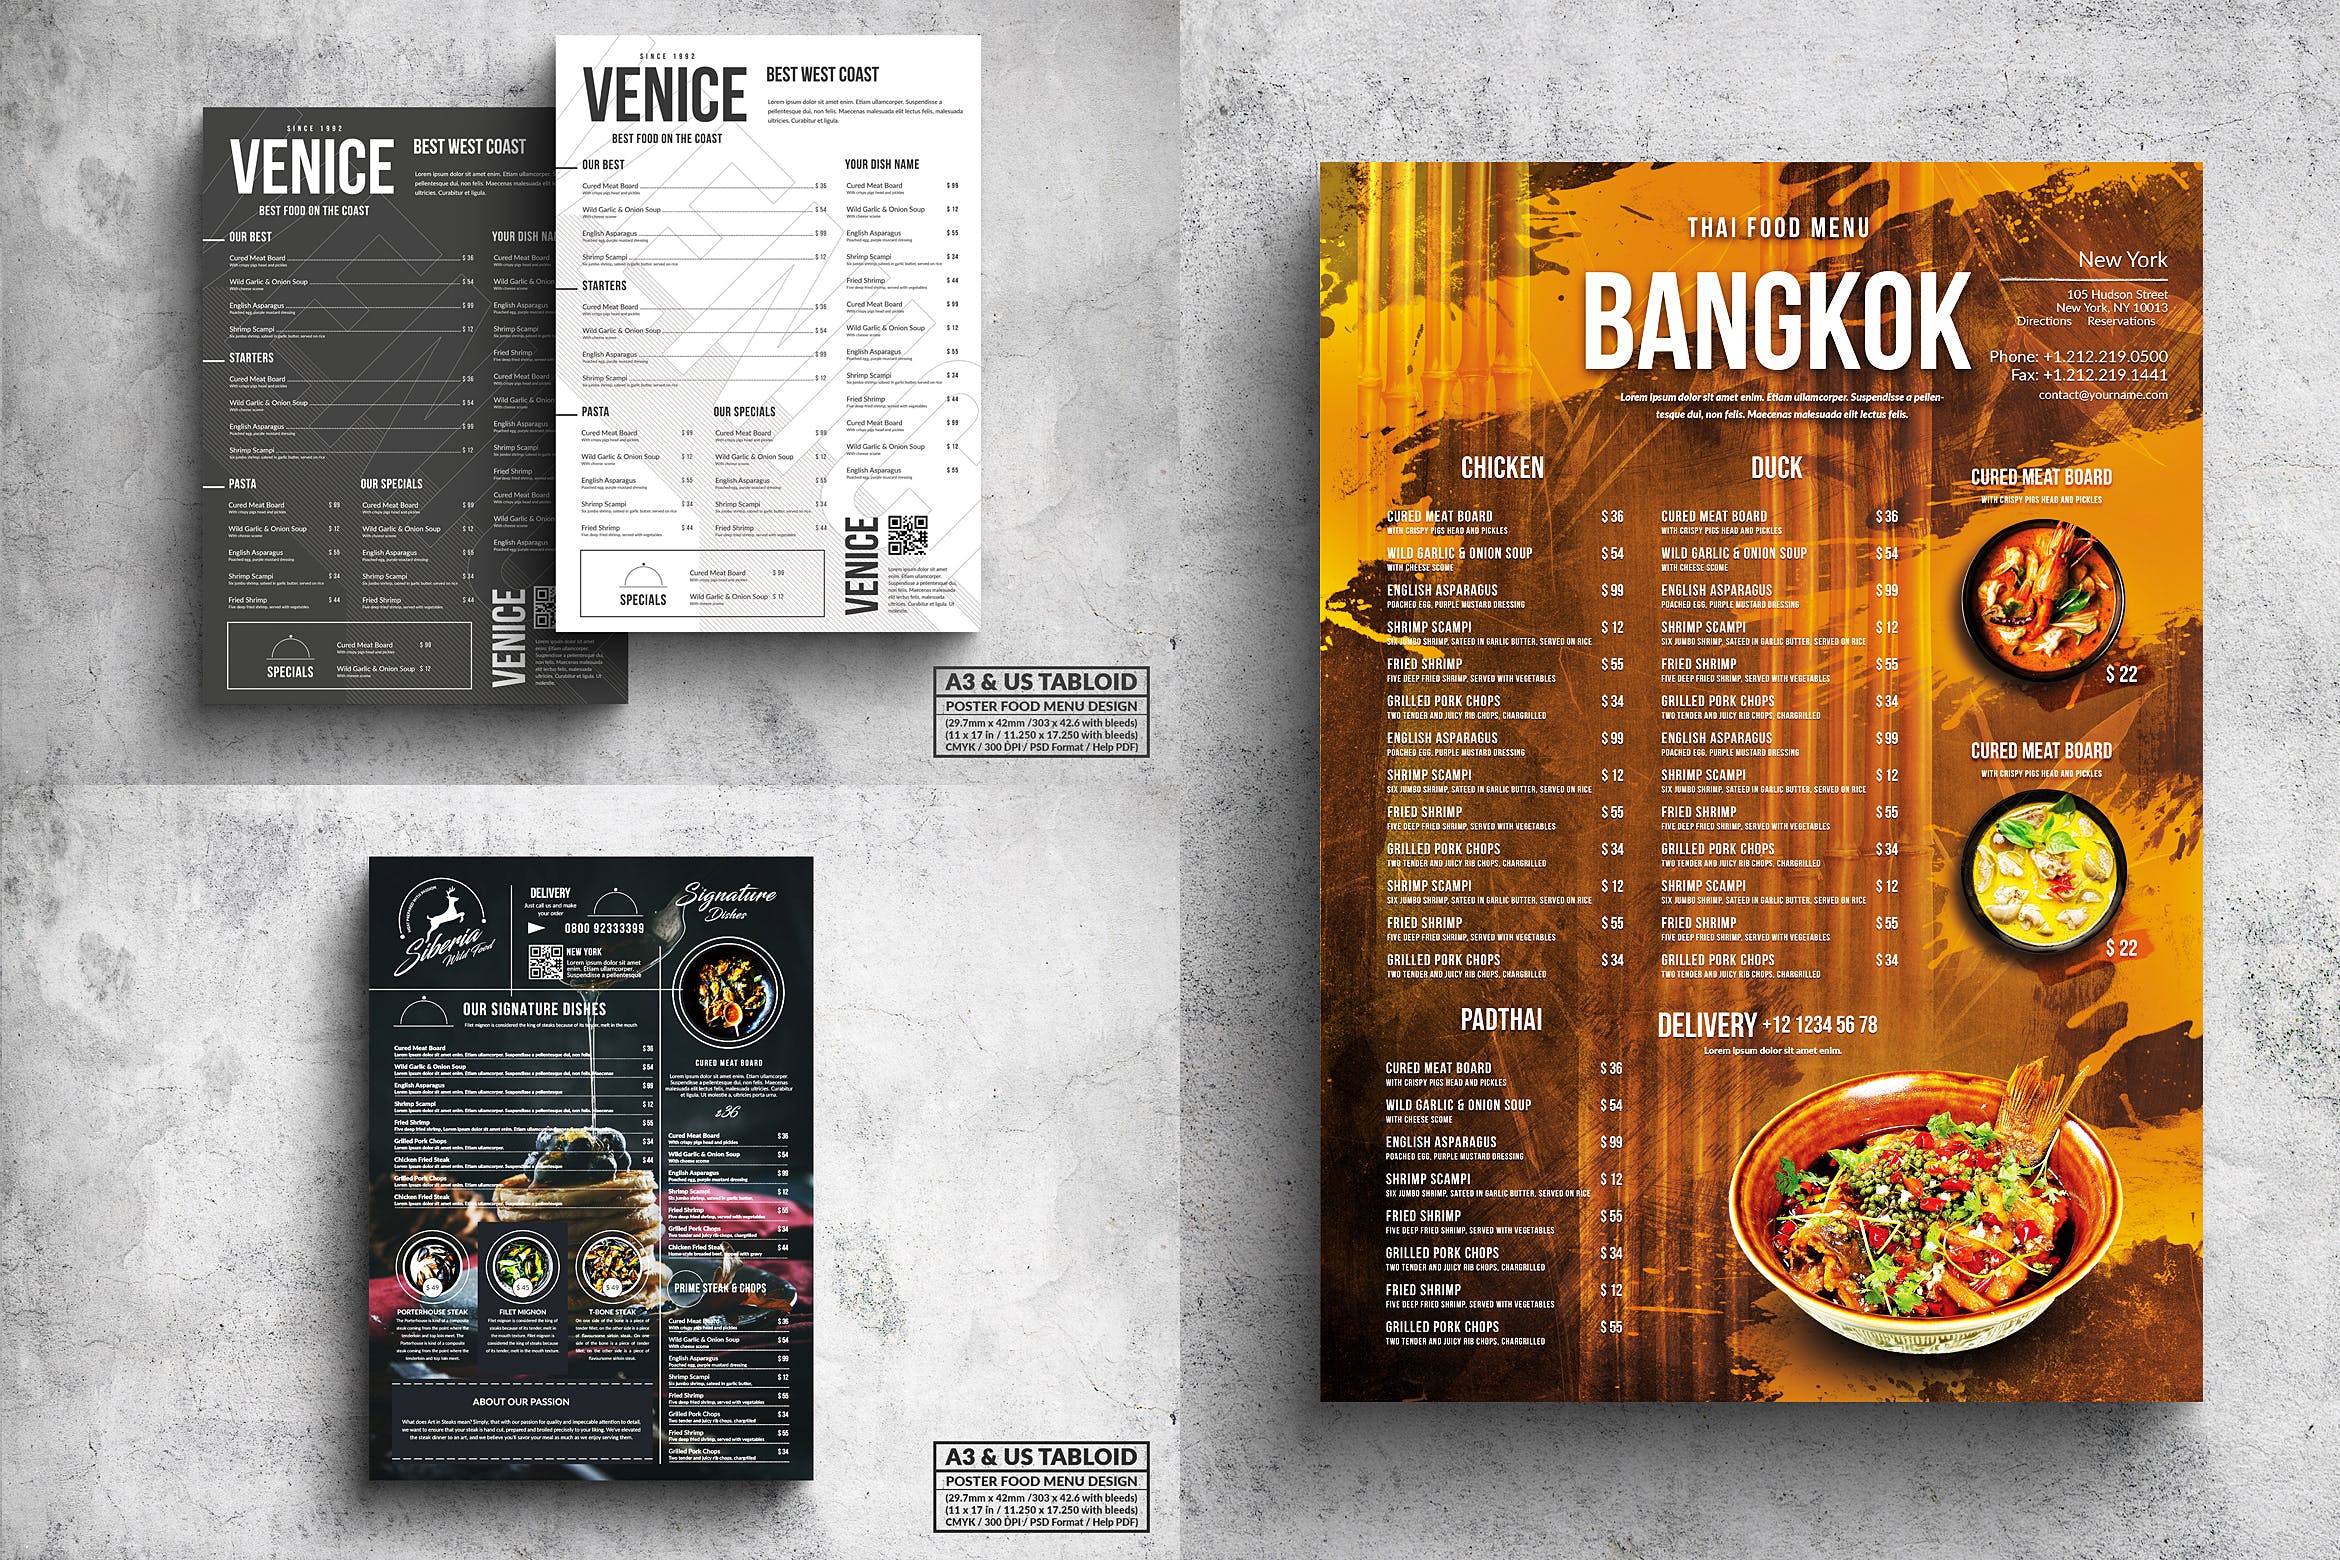 多合一餐馆餐厅菜单海报PSD素材16图库精选模板v2 Poster Food Menu A3 & US Tabloid Bundle插图